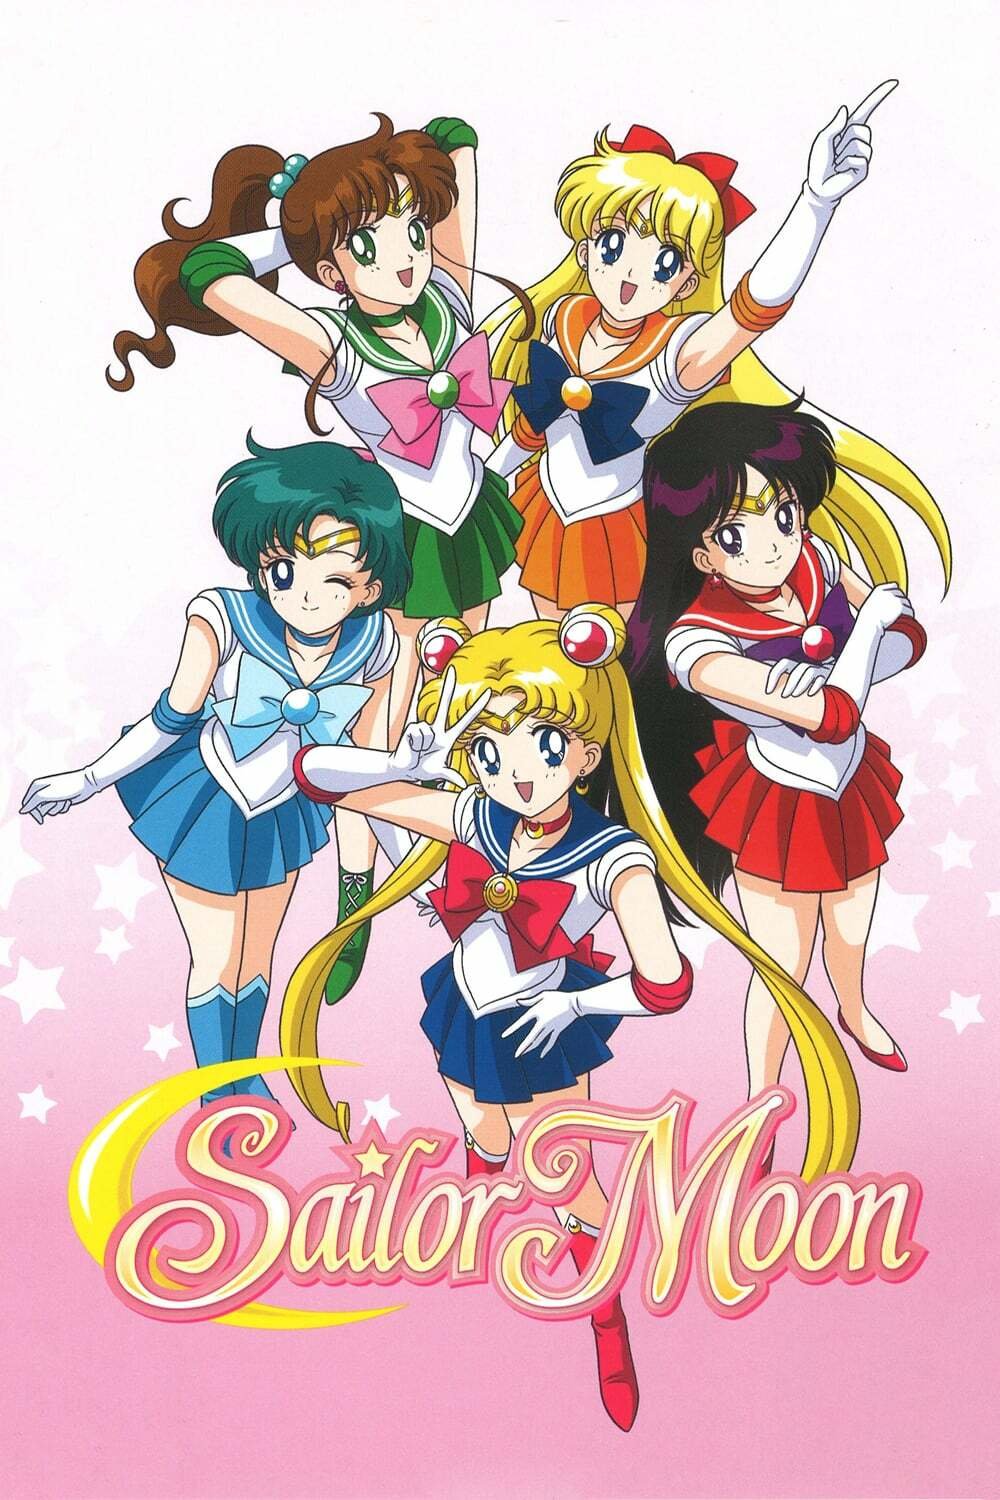 Μια εικόνα των μαχητών στο ιστορικό anime του Sailor Moon